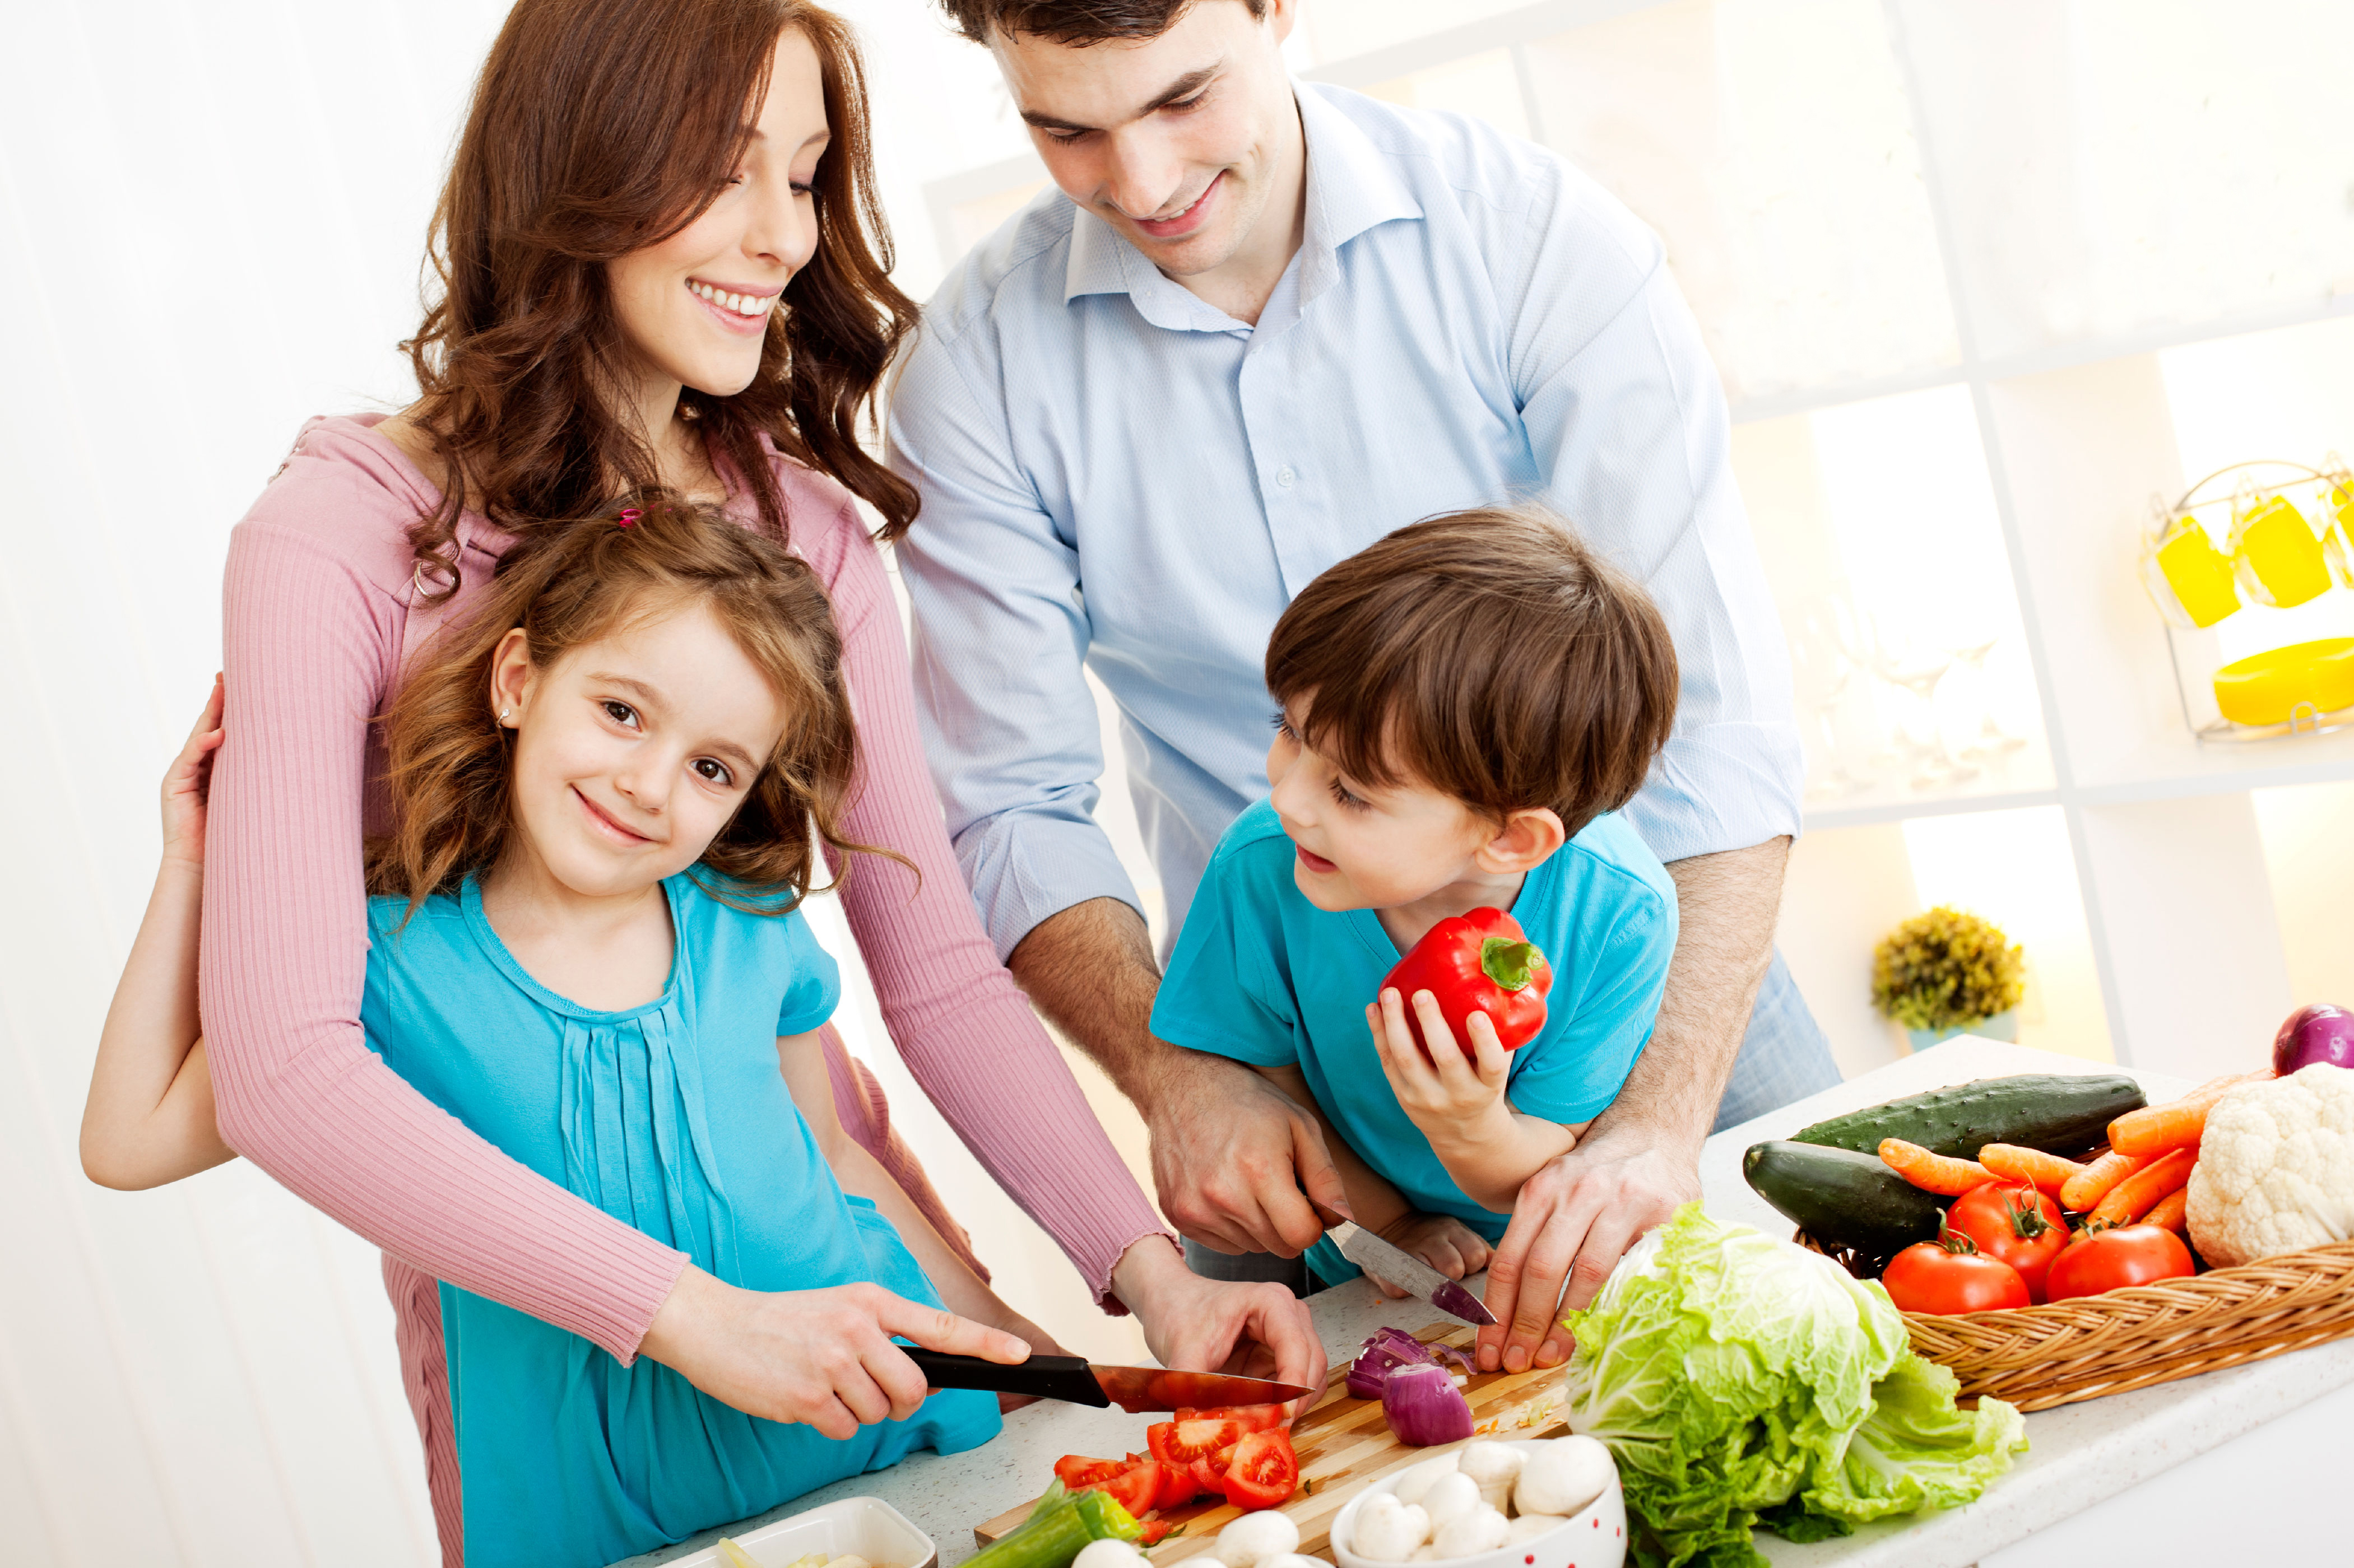 Родителей заботящихся о здоровье. Здоровое питание в семье. Здоровые дети и родители. Здоровые дети счастливая семья. Семейный образ жизни.